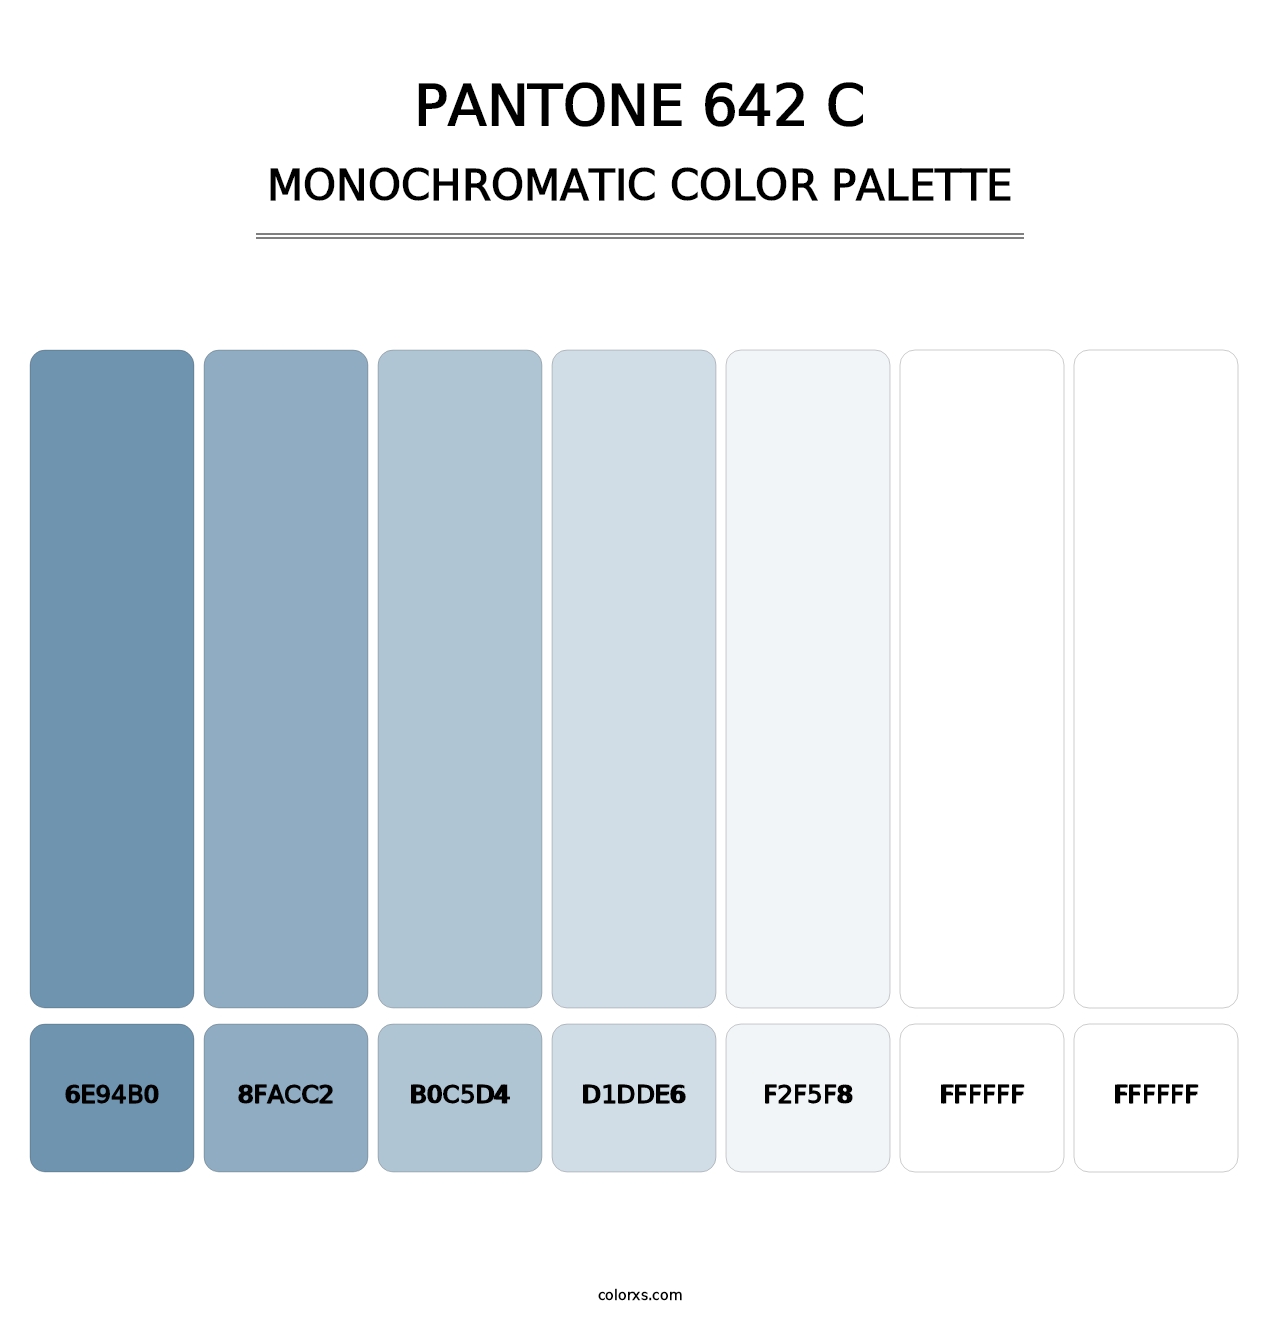 PANTONE 642 C - Monochromatic Color Palette